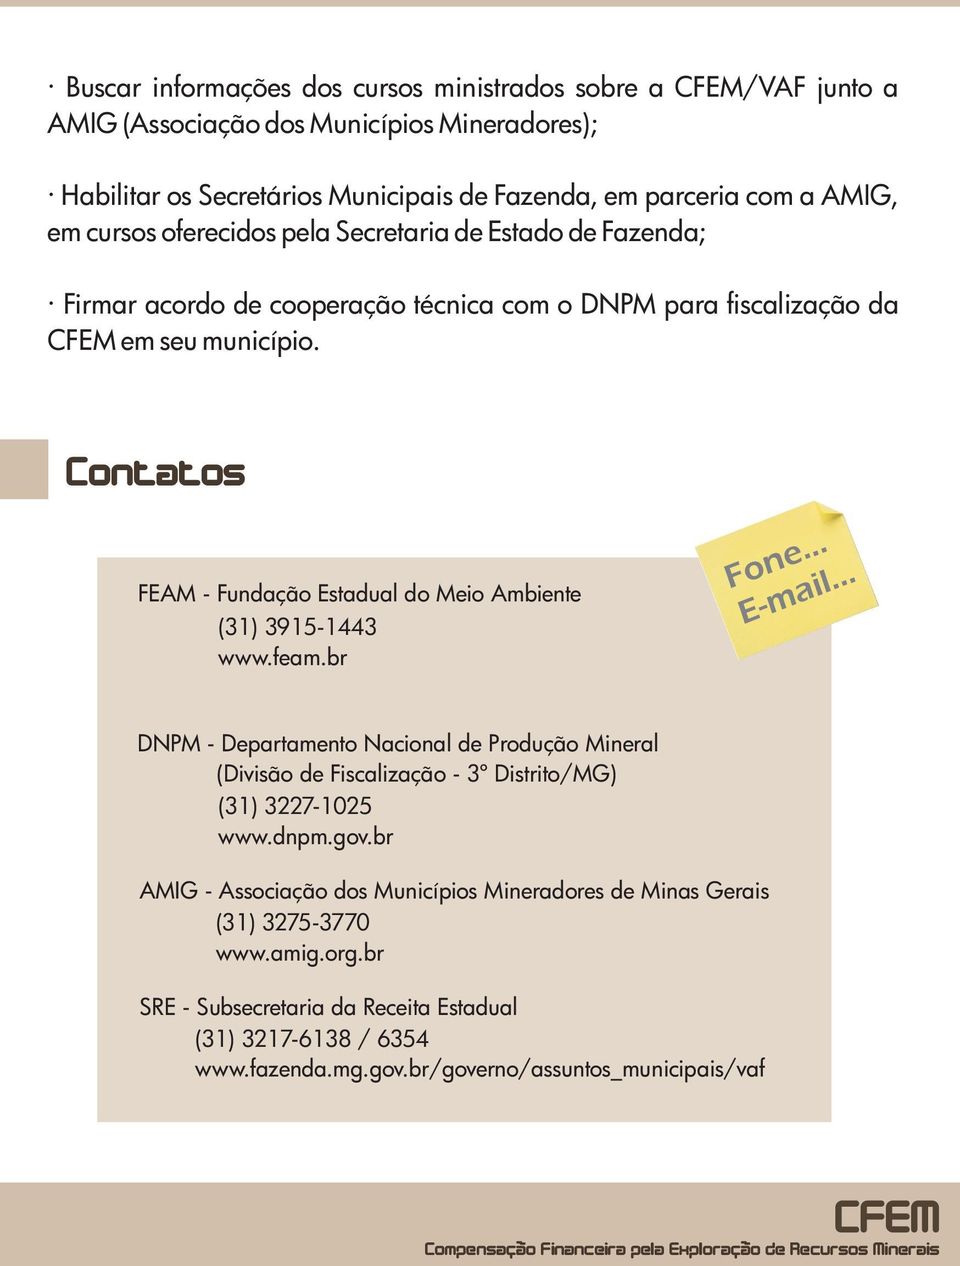 Contatos FEAM - Fundação Estadual do Meio Ambiente (31) 3915-1443 www.feam.br Fone... E-mail.